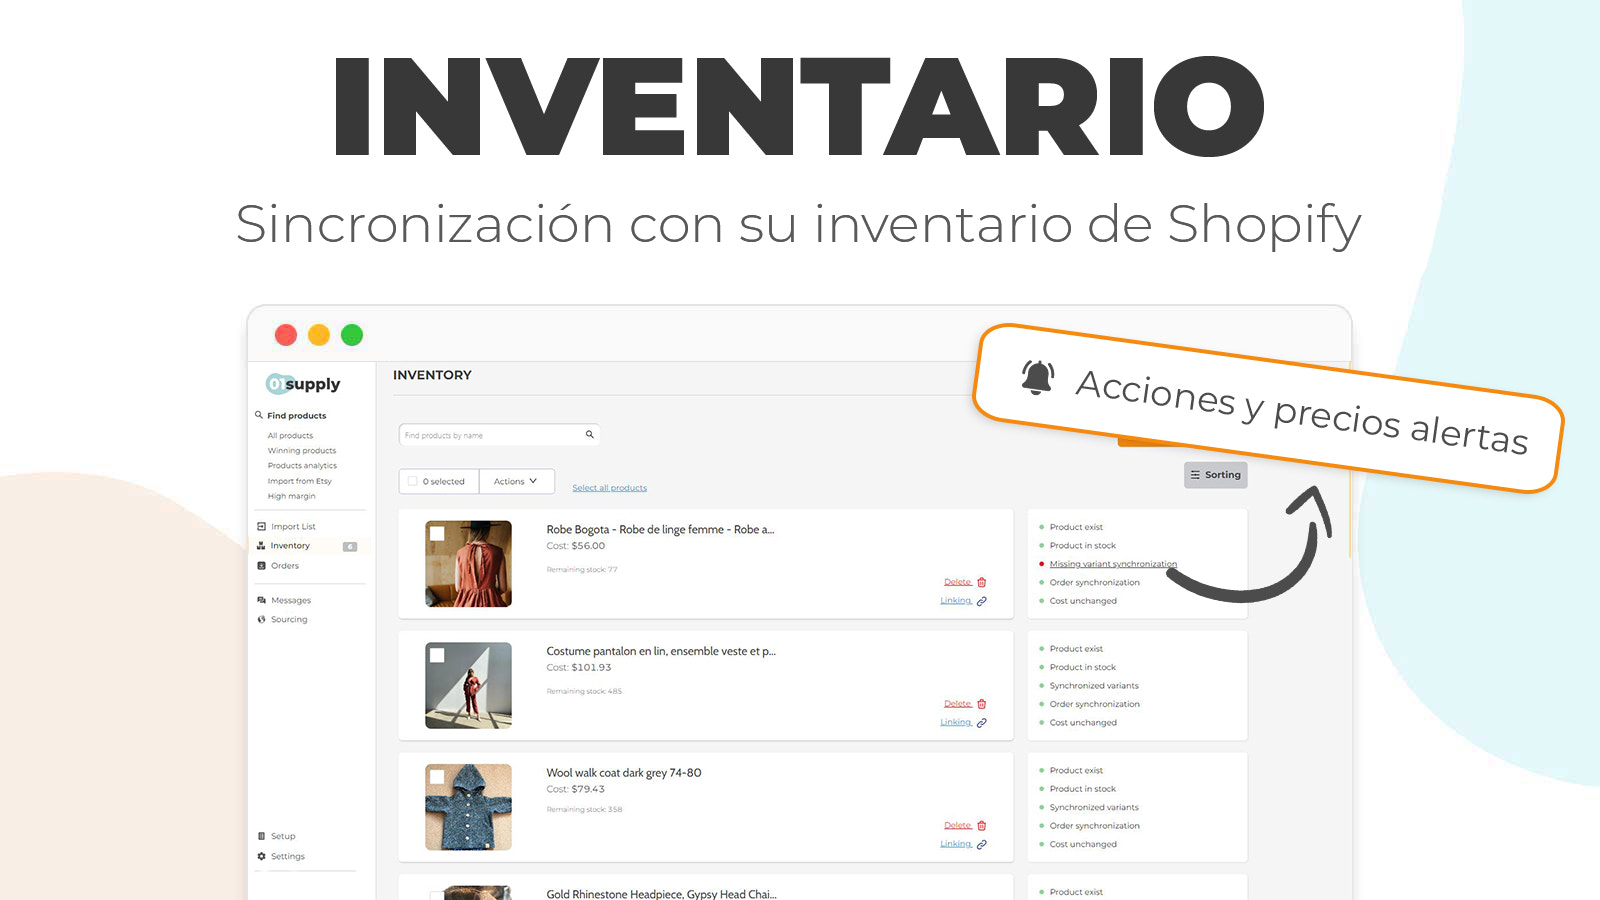 Sincronización con su inventario de Shopify